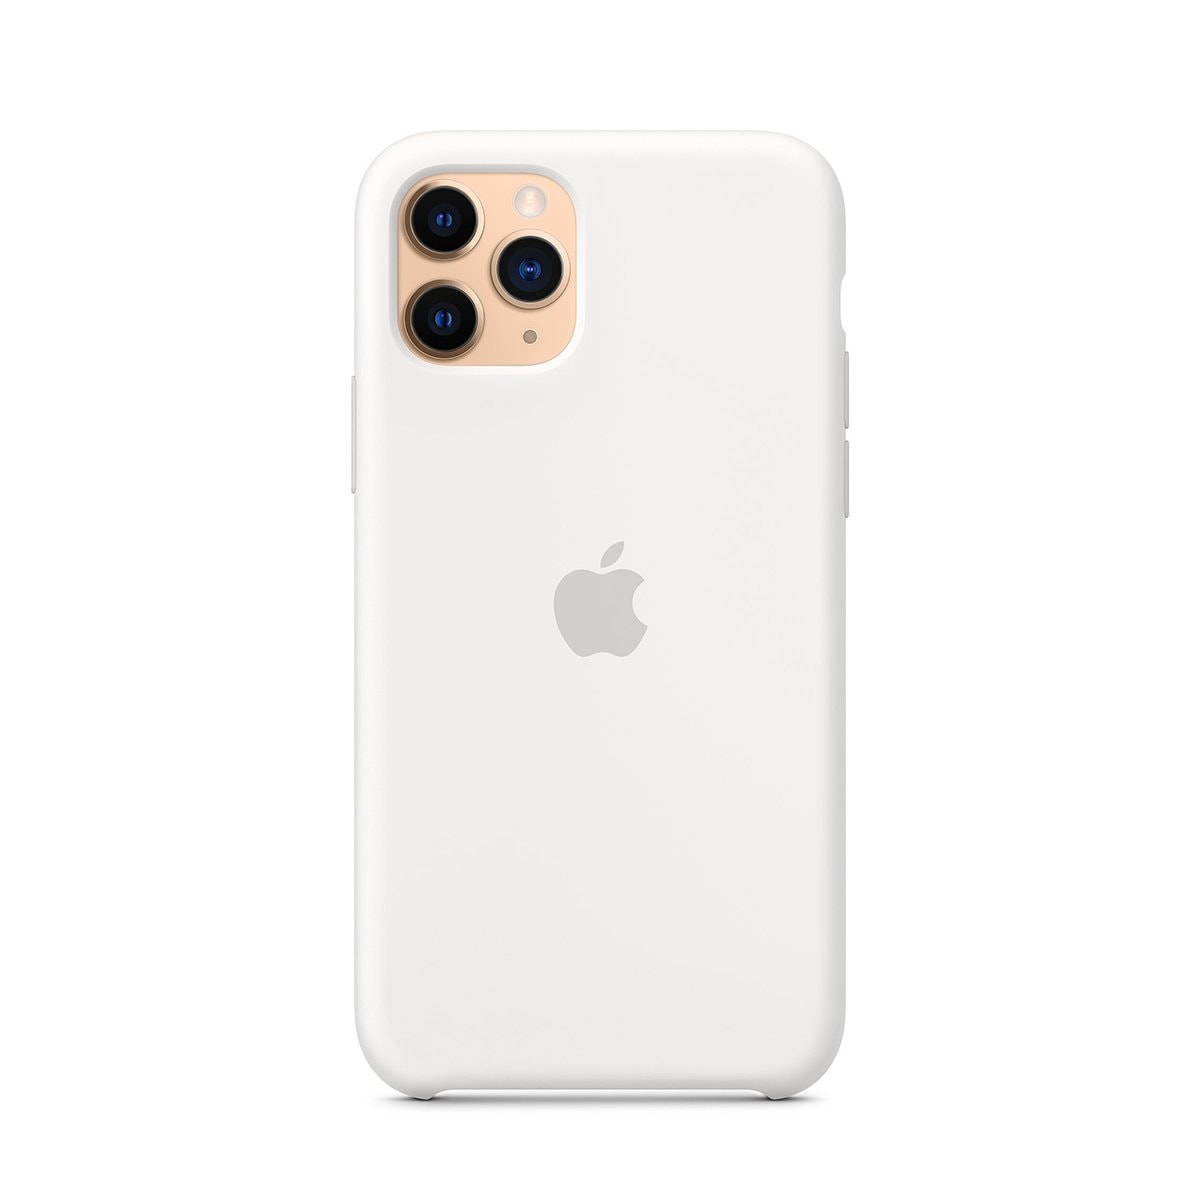 픽업전용) Iphone 11 Pro 실리콘 케이스 - 화이트(Mwyl2Fe/A), 신세계적 쇼핑포털 Ssg.Com